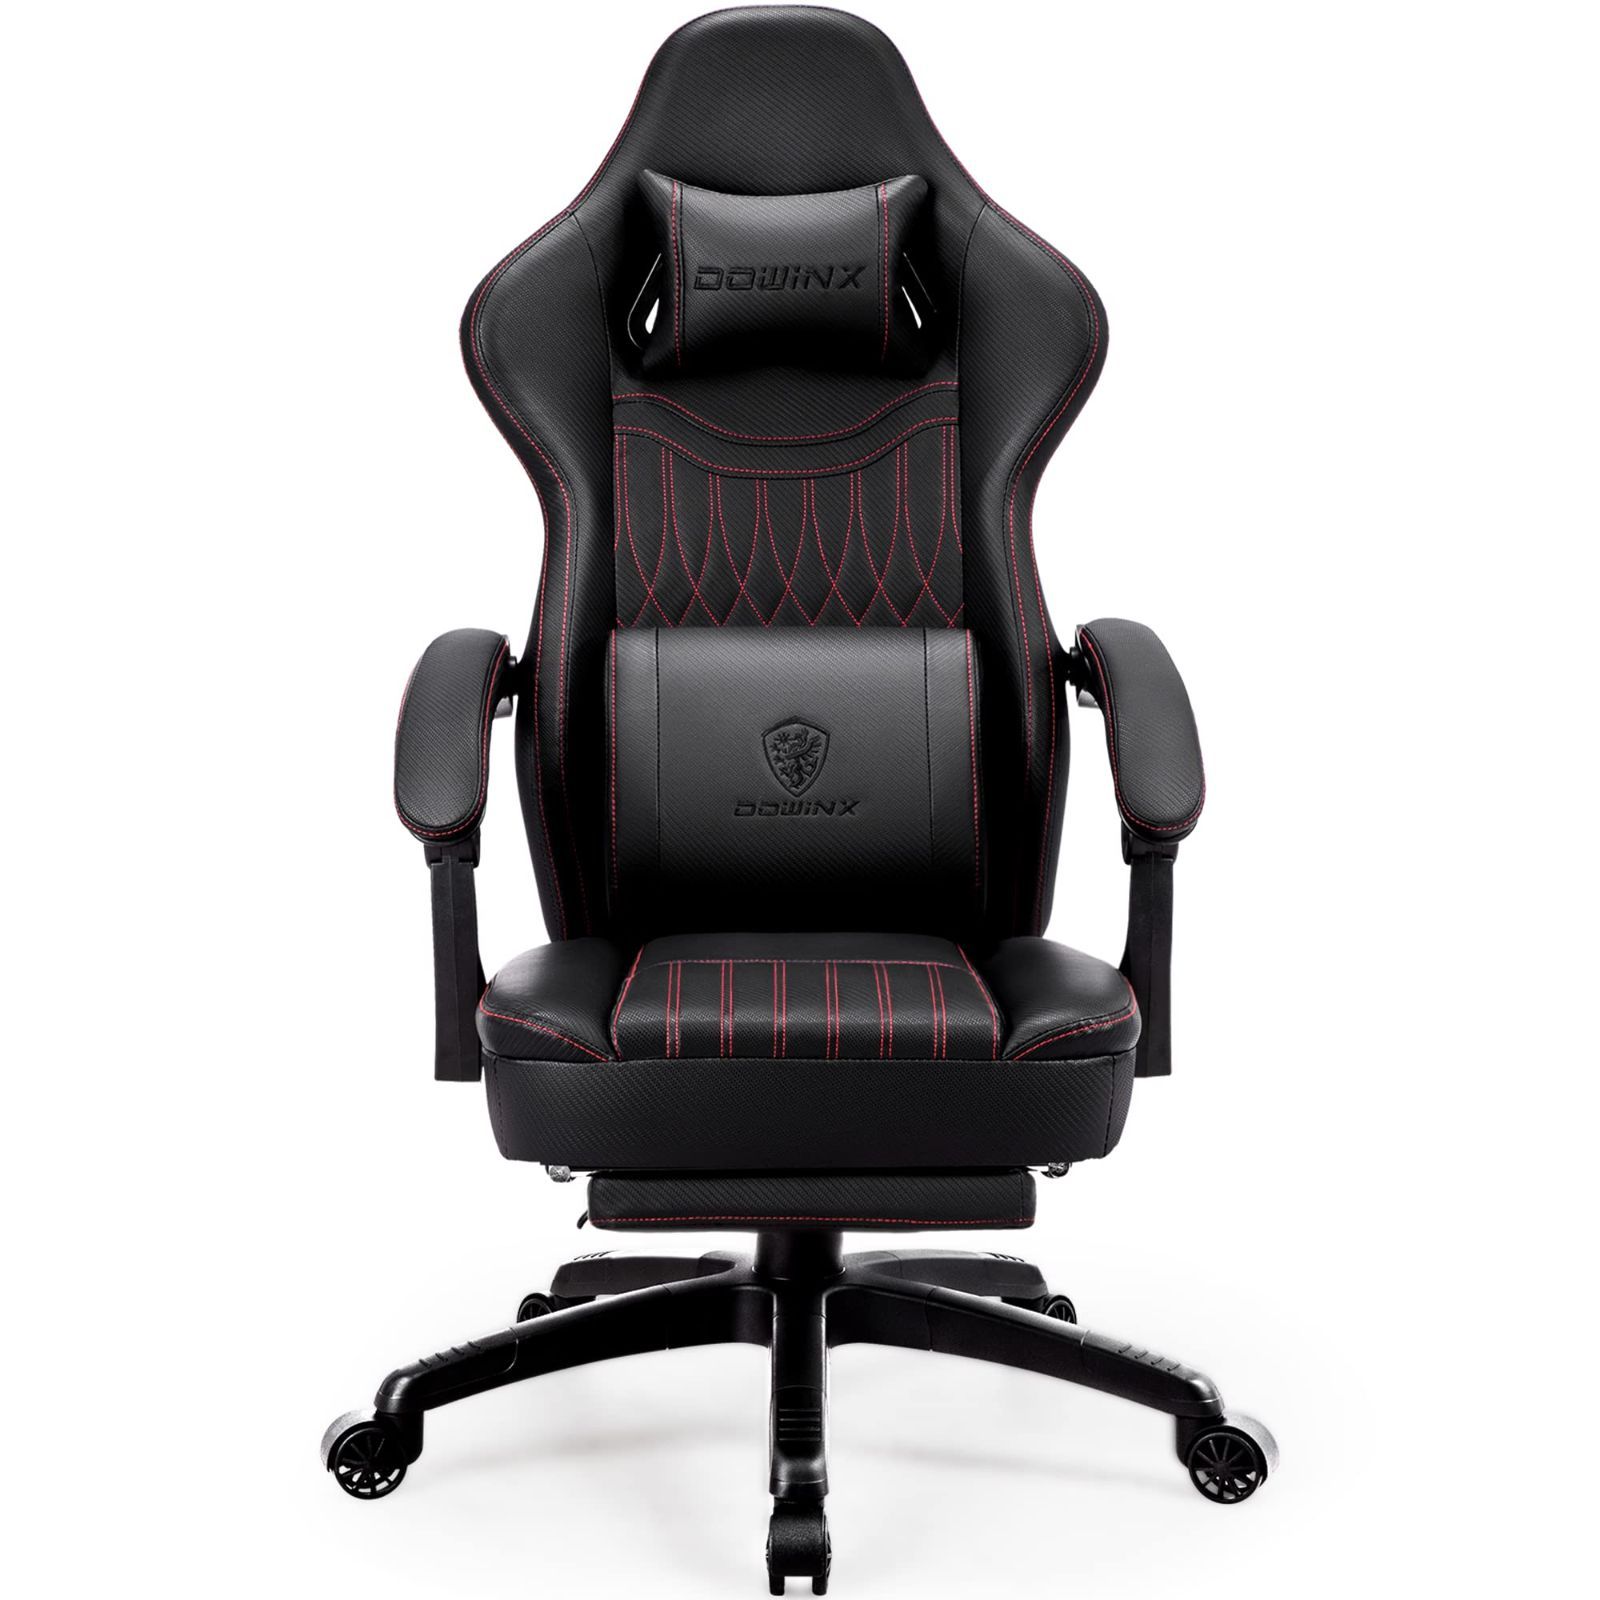 色: ブラック】Dowinx ゲーミングチェア 椅子 オフィスチェア デスクチ